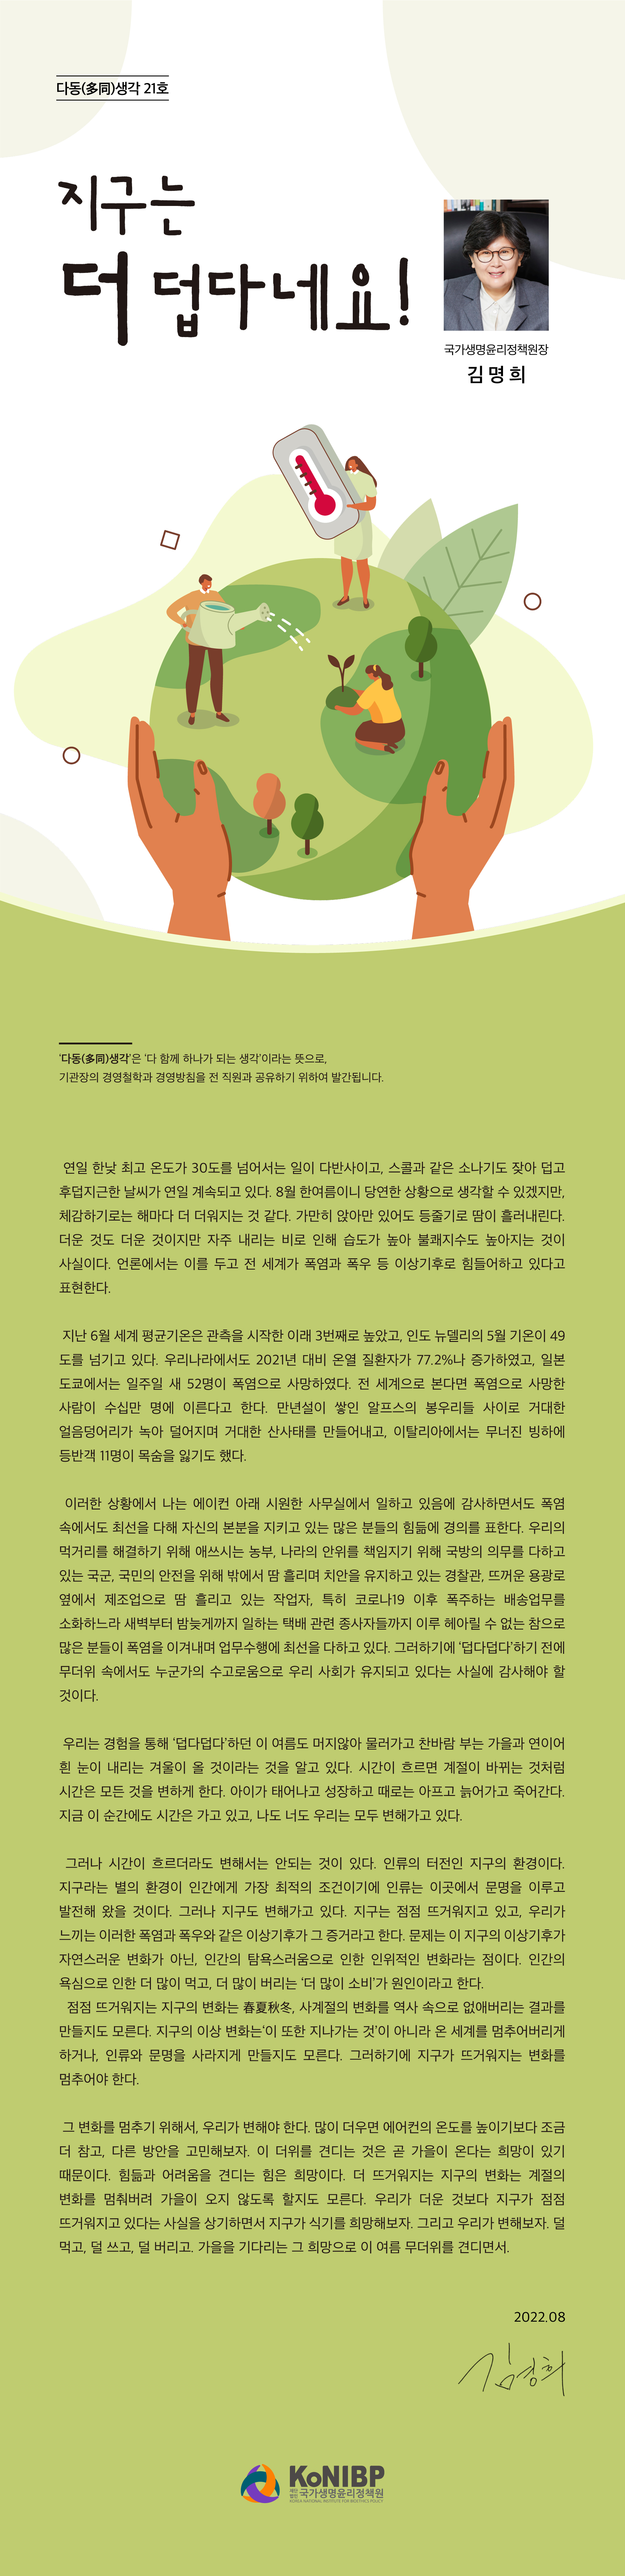 2208-국가생명윤리정책원-다동생각-21호(최종).jpg